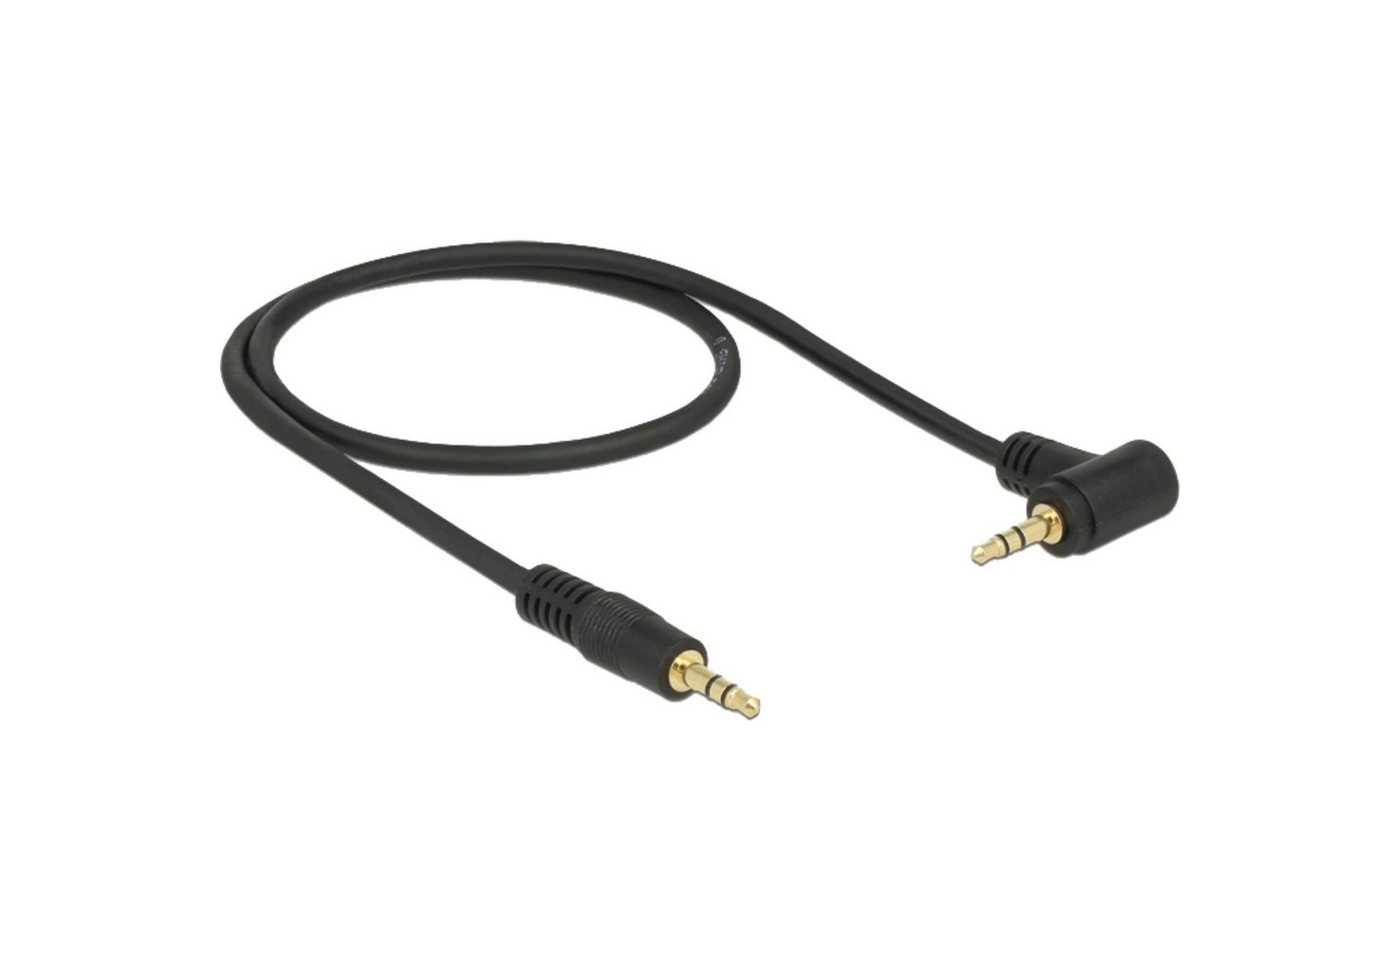 Audiokabel Klinke 3,5mm Stecker > 3,5mm Stecker